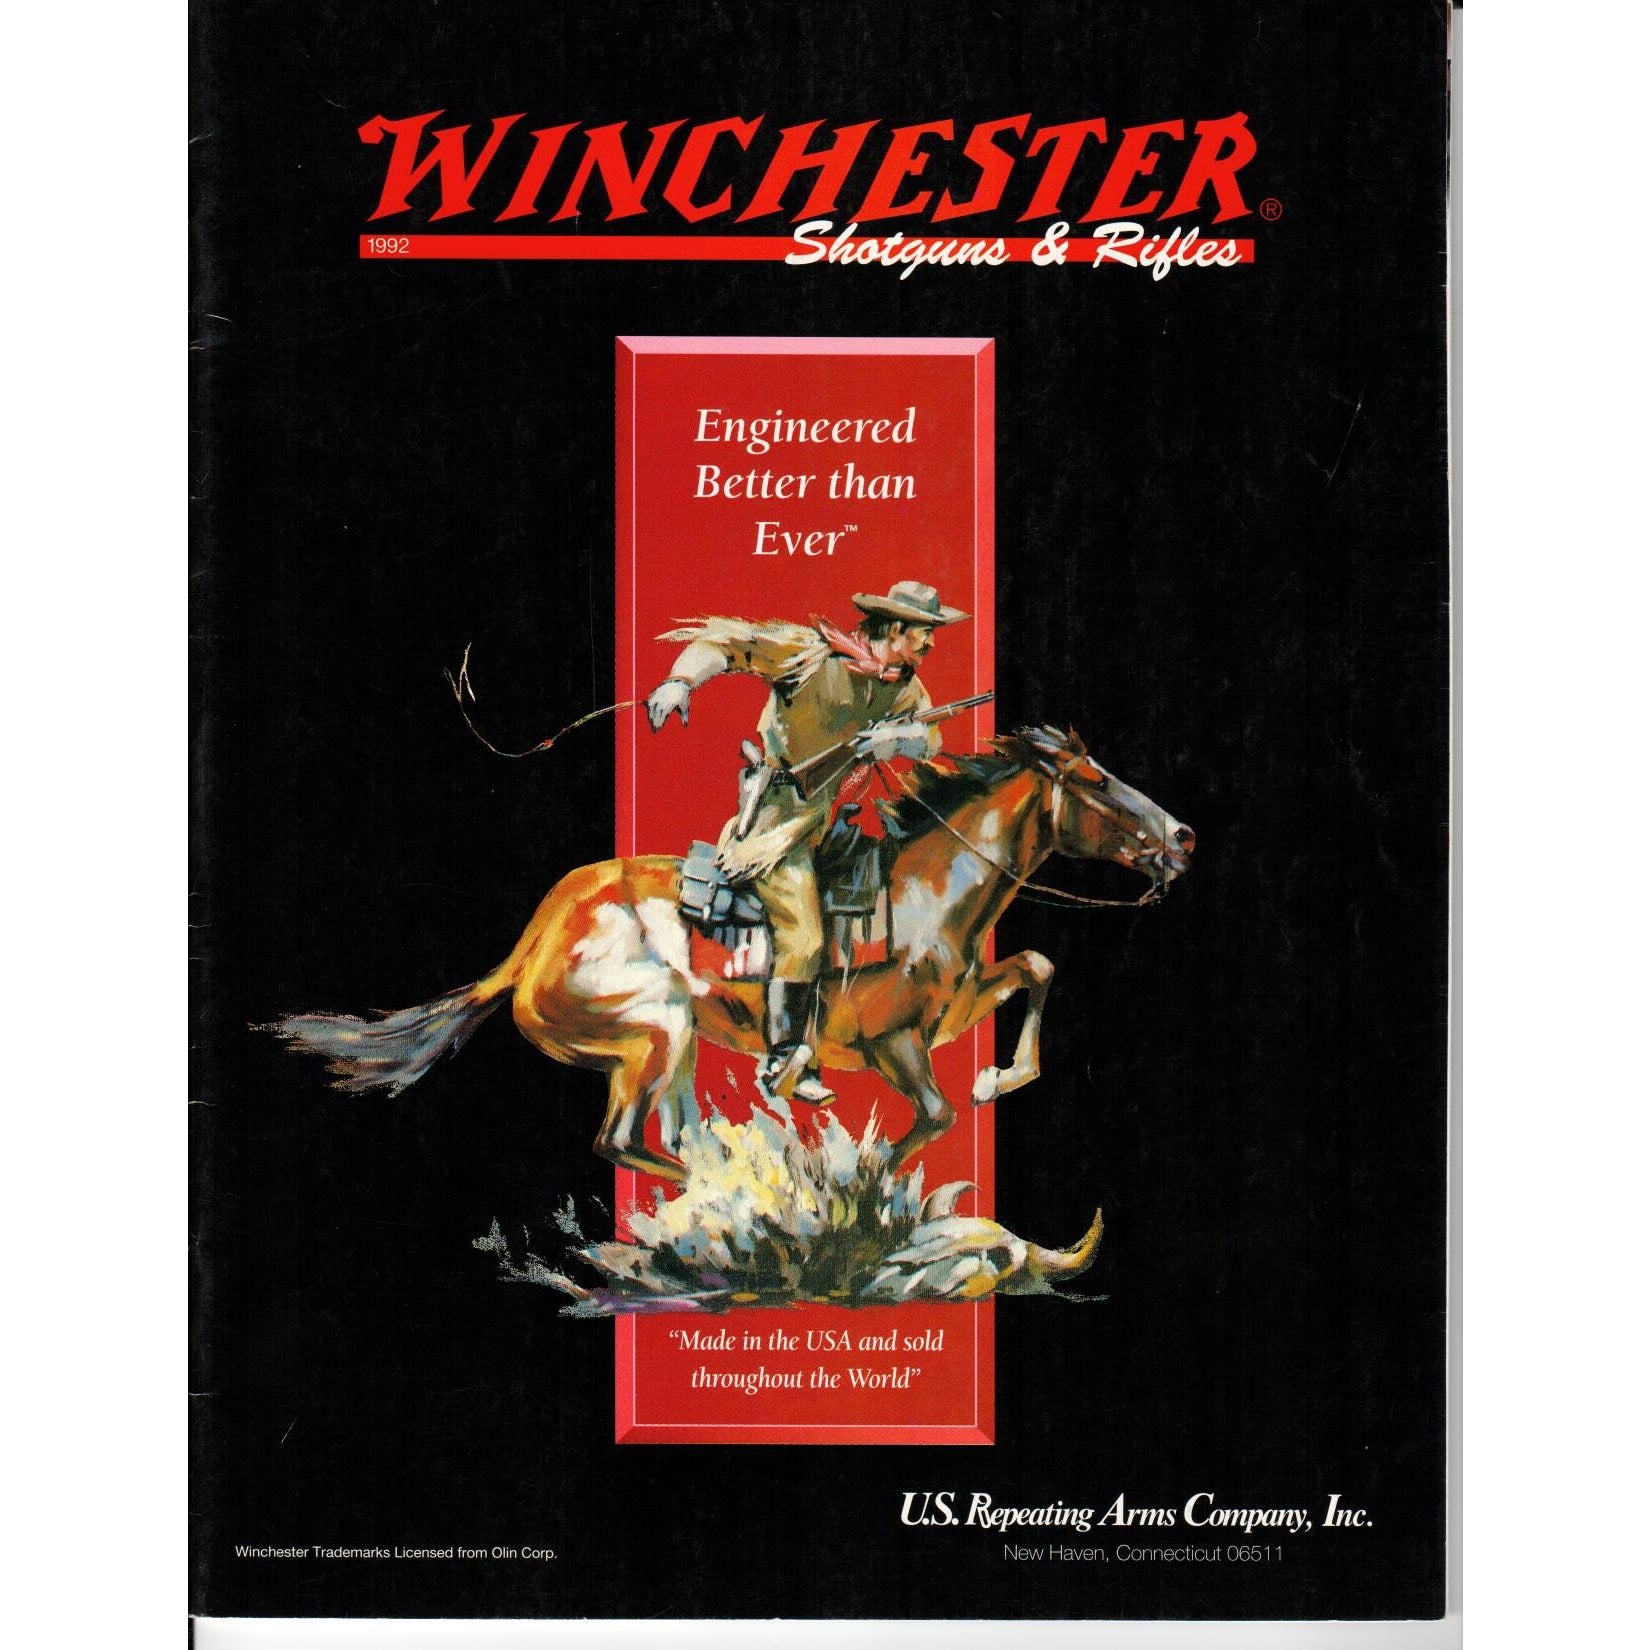 Winchester Shotguns & Rifles 1992